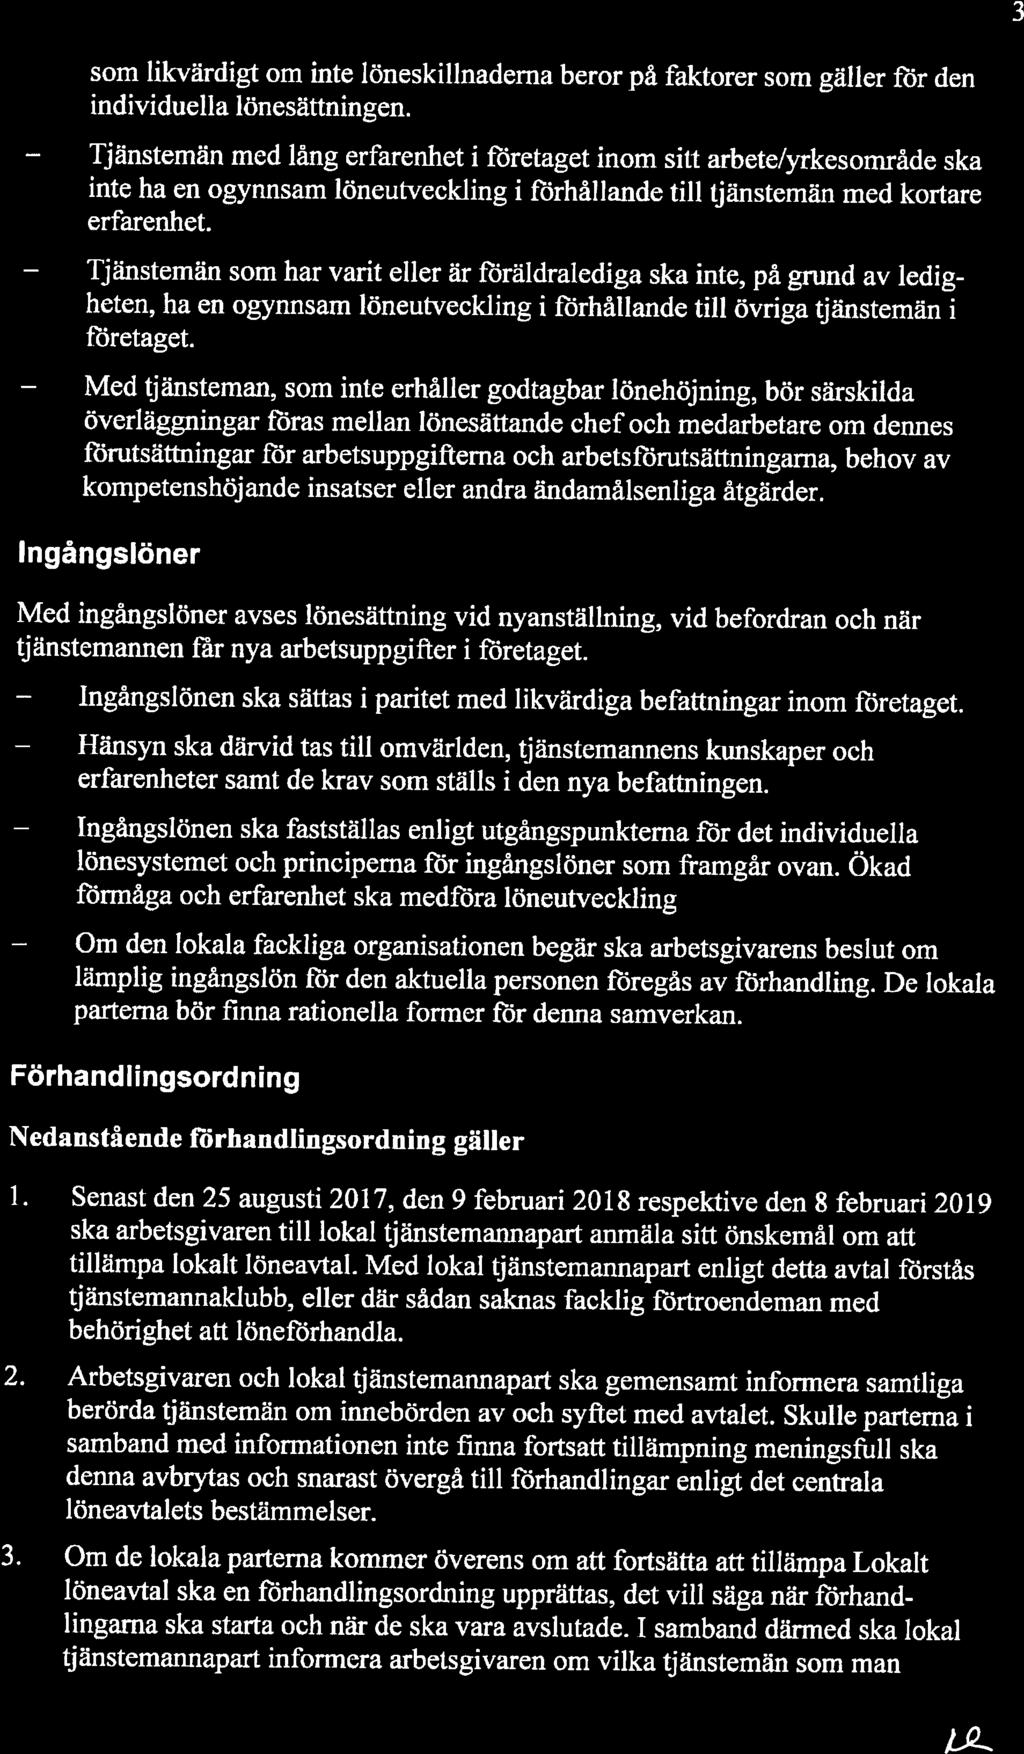 Hänsyn Ingångslönen 3 som likvärdigt om inte löneskillnadema beror på faktorer som gäller för den individuella lönesättningen.